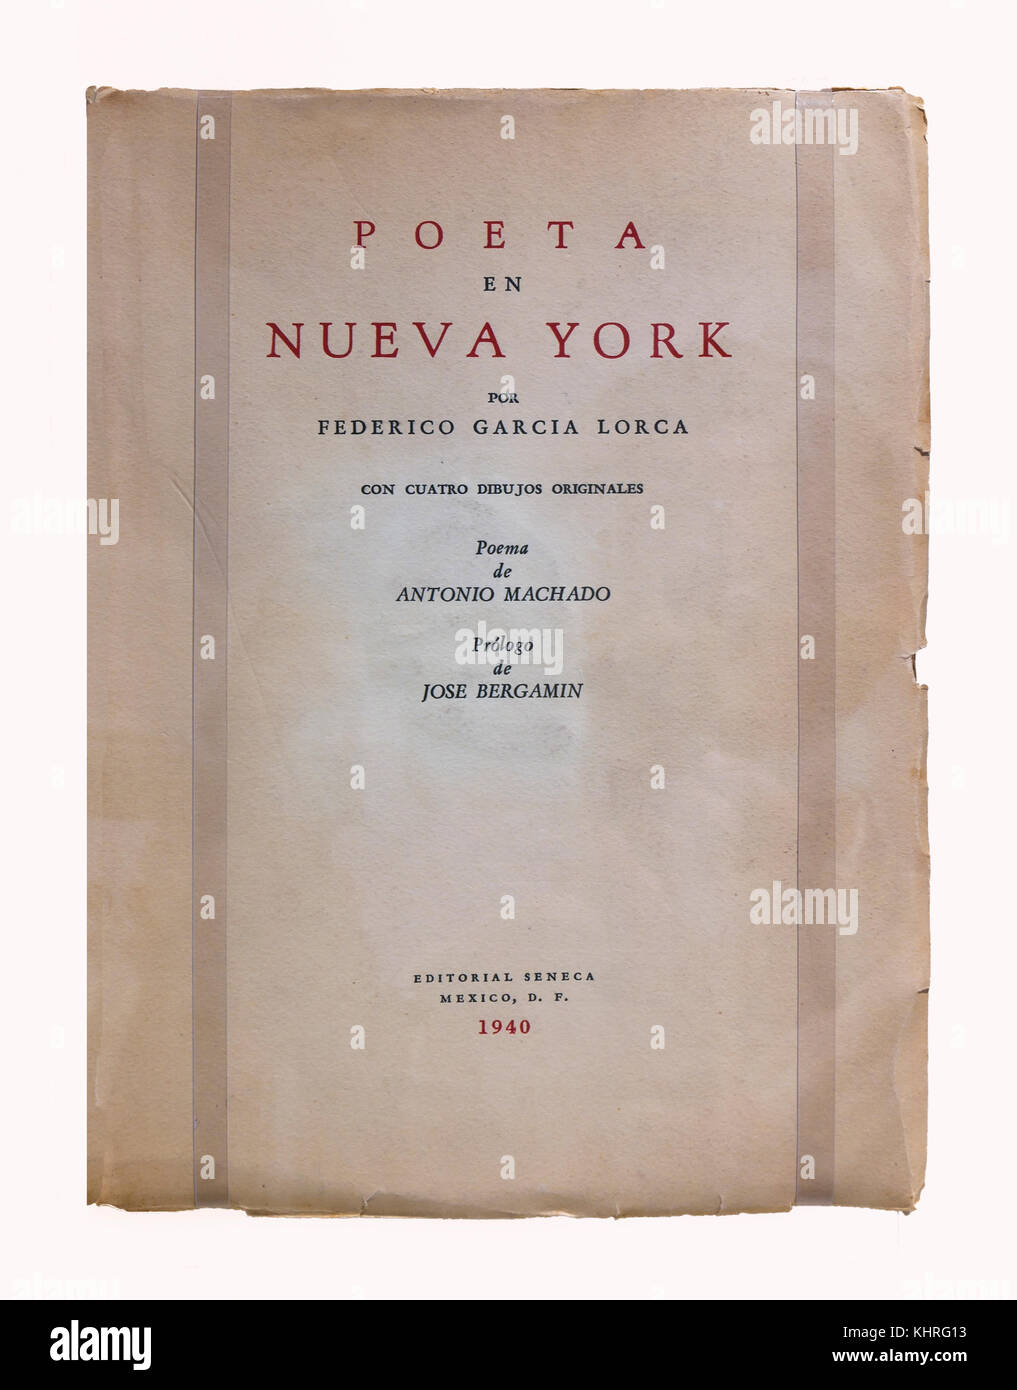 Geburtsort - das Museum des Dichters Federico Garcia Lorca, Buch' Poeta en Nueva York", Fuente vaqueros, Provinz Granada, Andalusien, Spanien, Euro Stockfoto